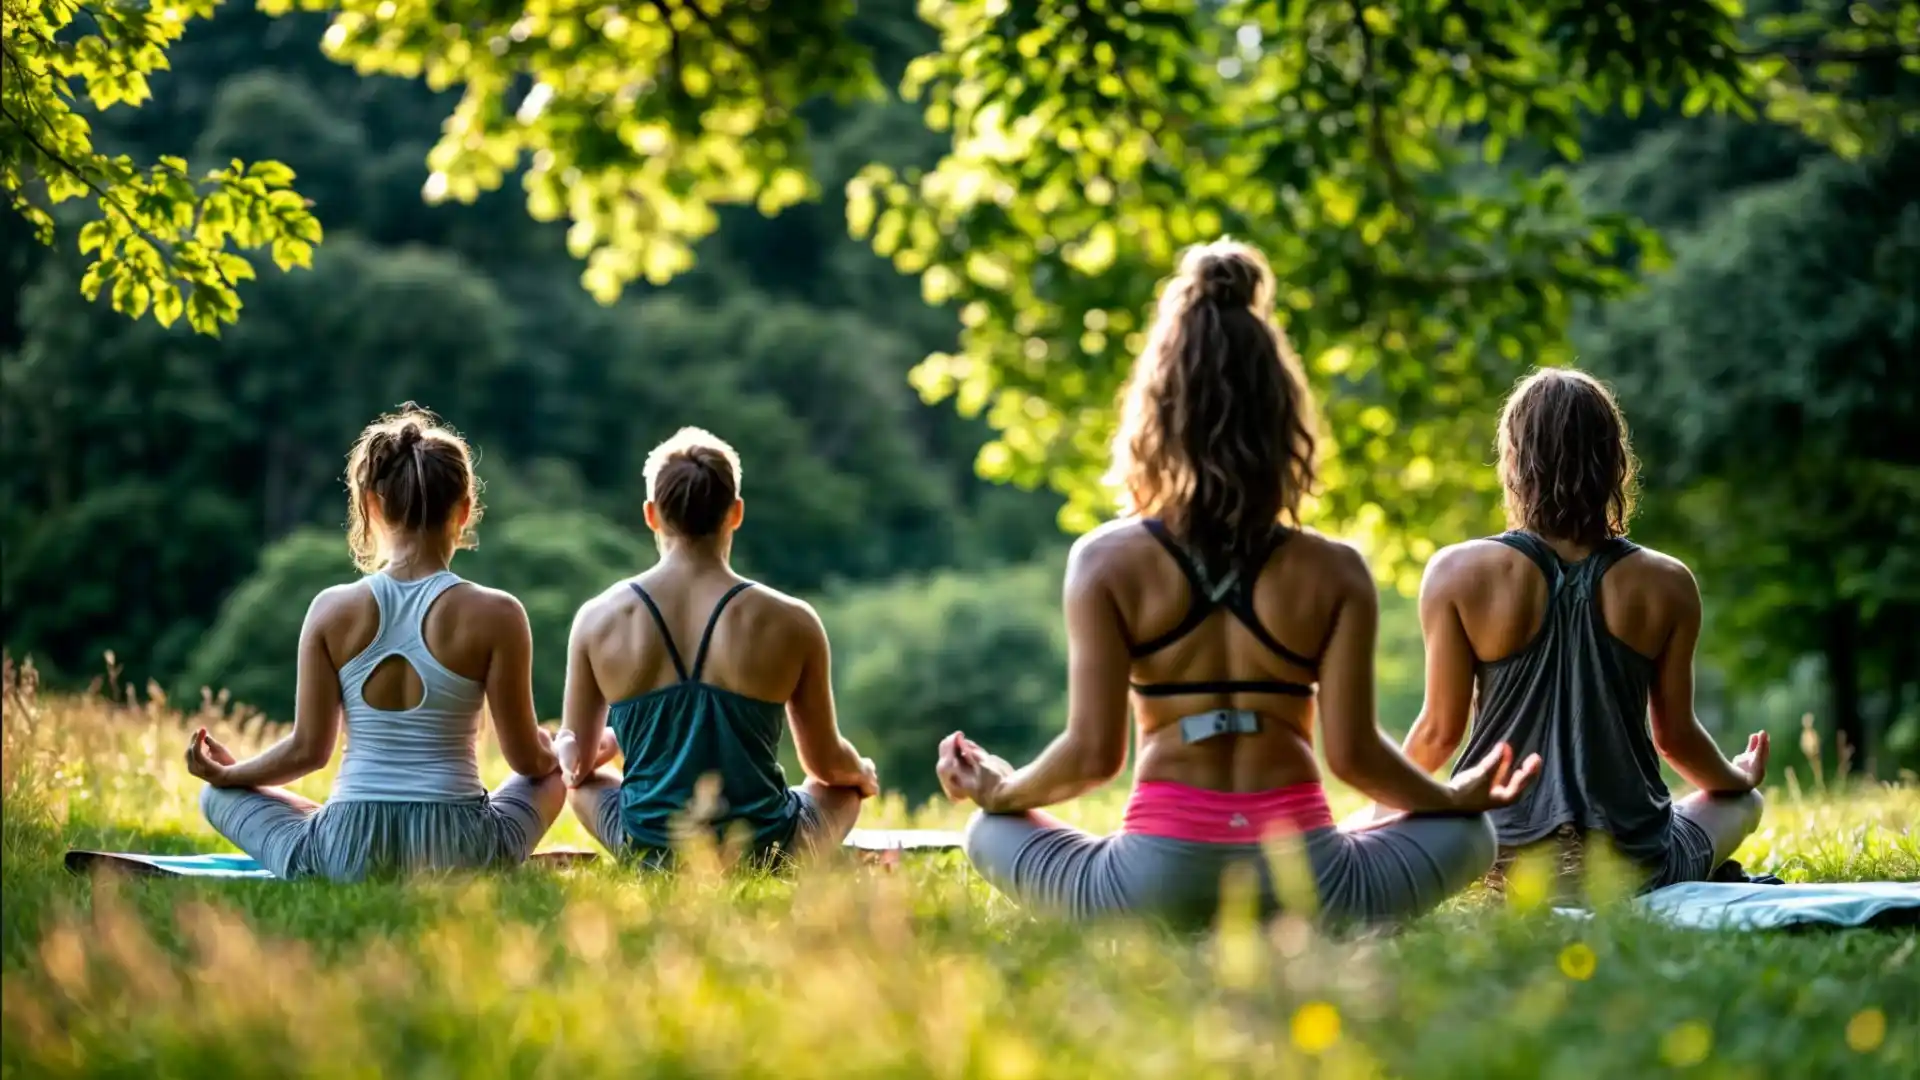 rupo practicando yoga al aire libre, simbolizando la armonía con la naturaleza de FitLine.